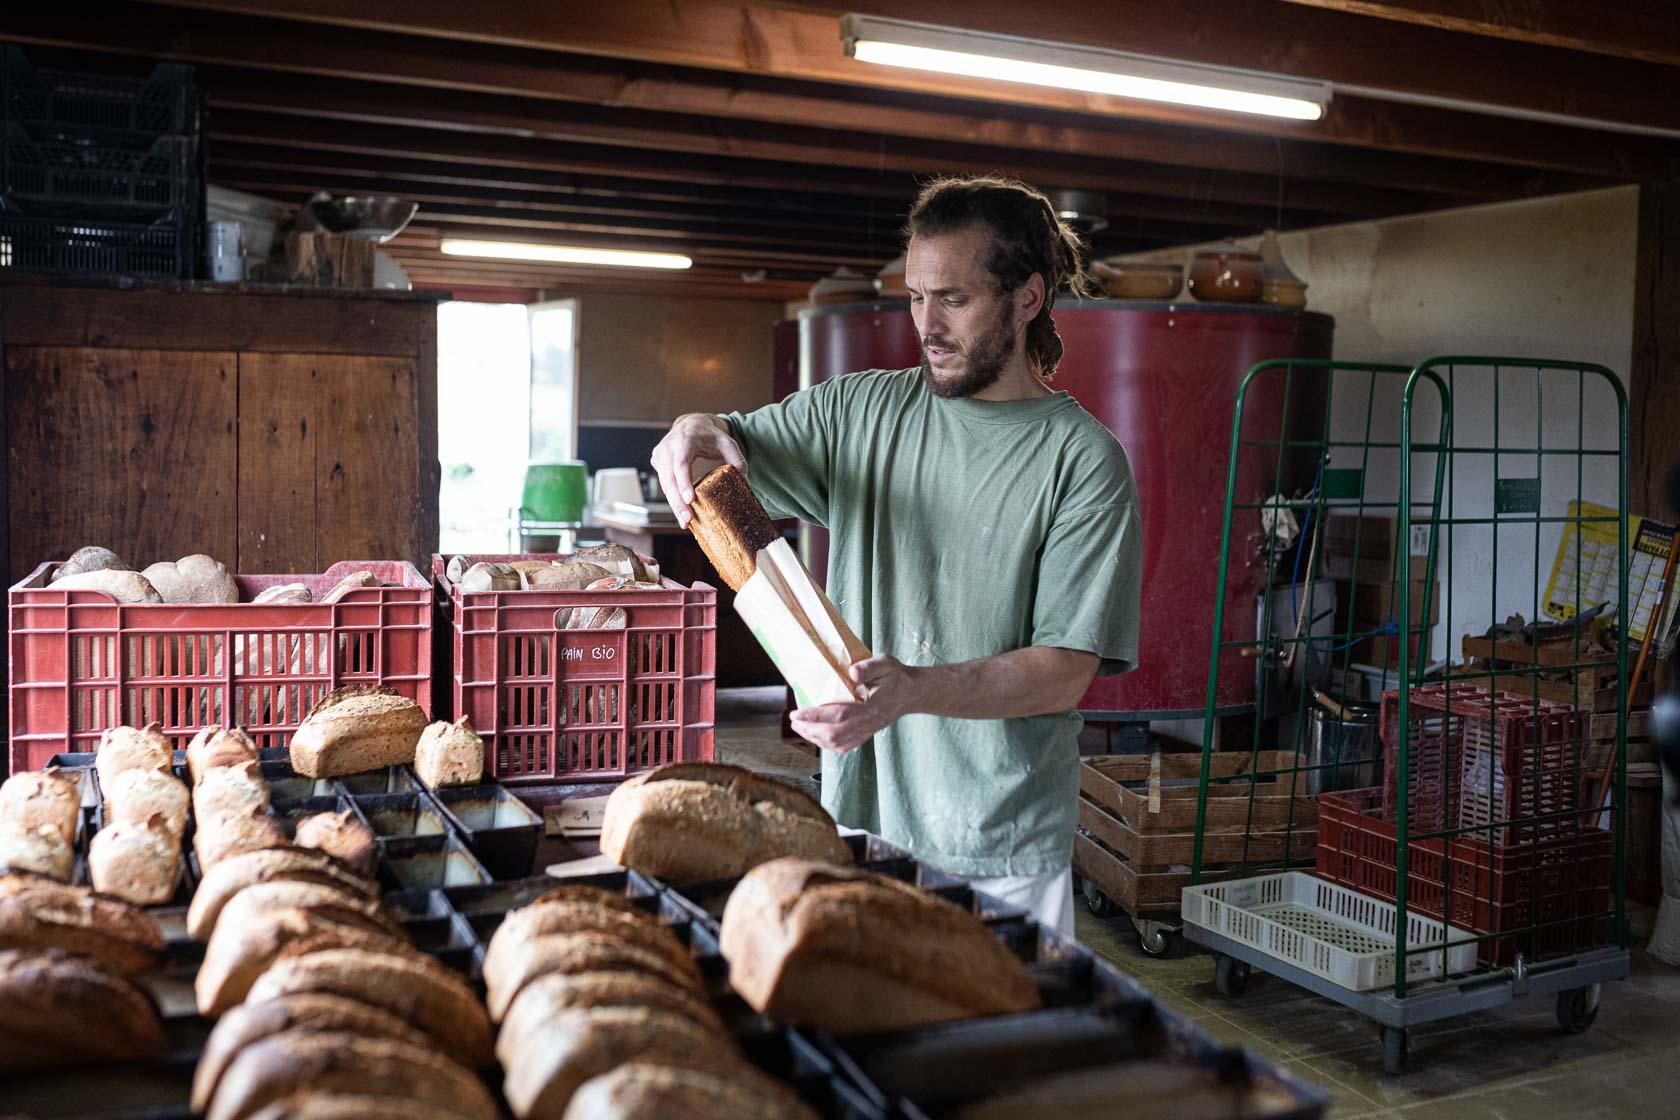 Julien prépare les commandes de pain qu'il distribuera en vente directe et dans un magasin de producteurs Sarzeau, France - 2020